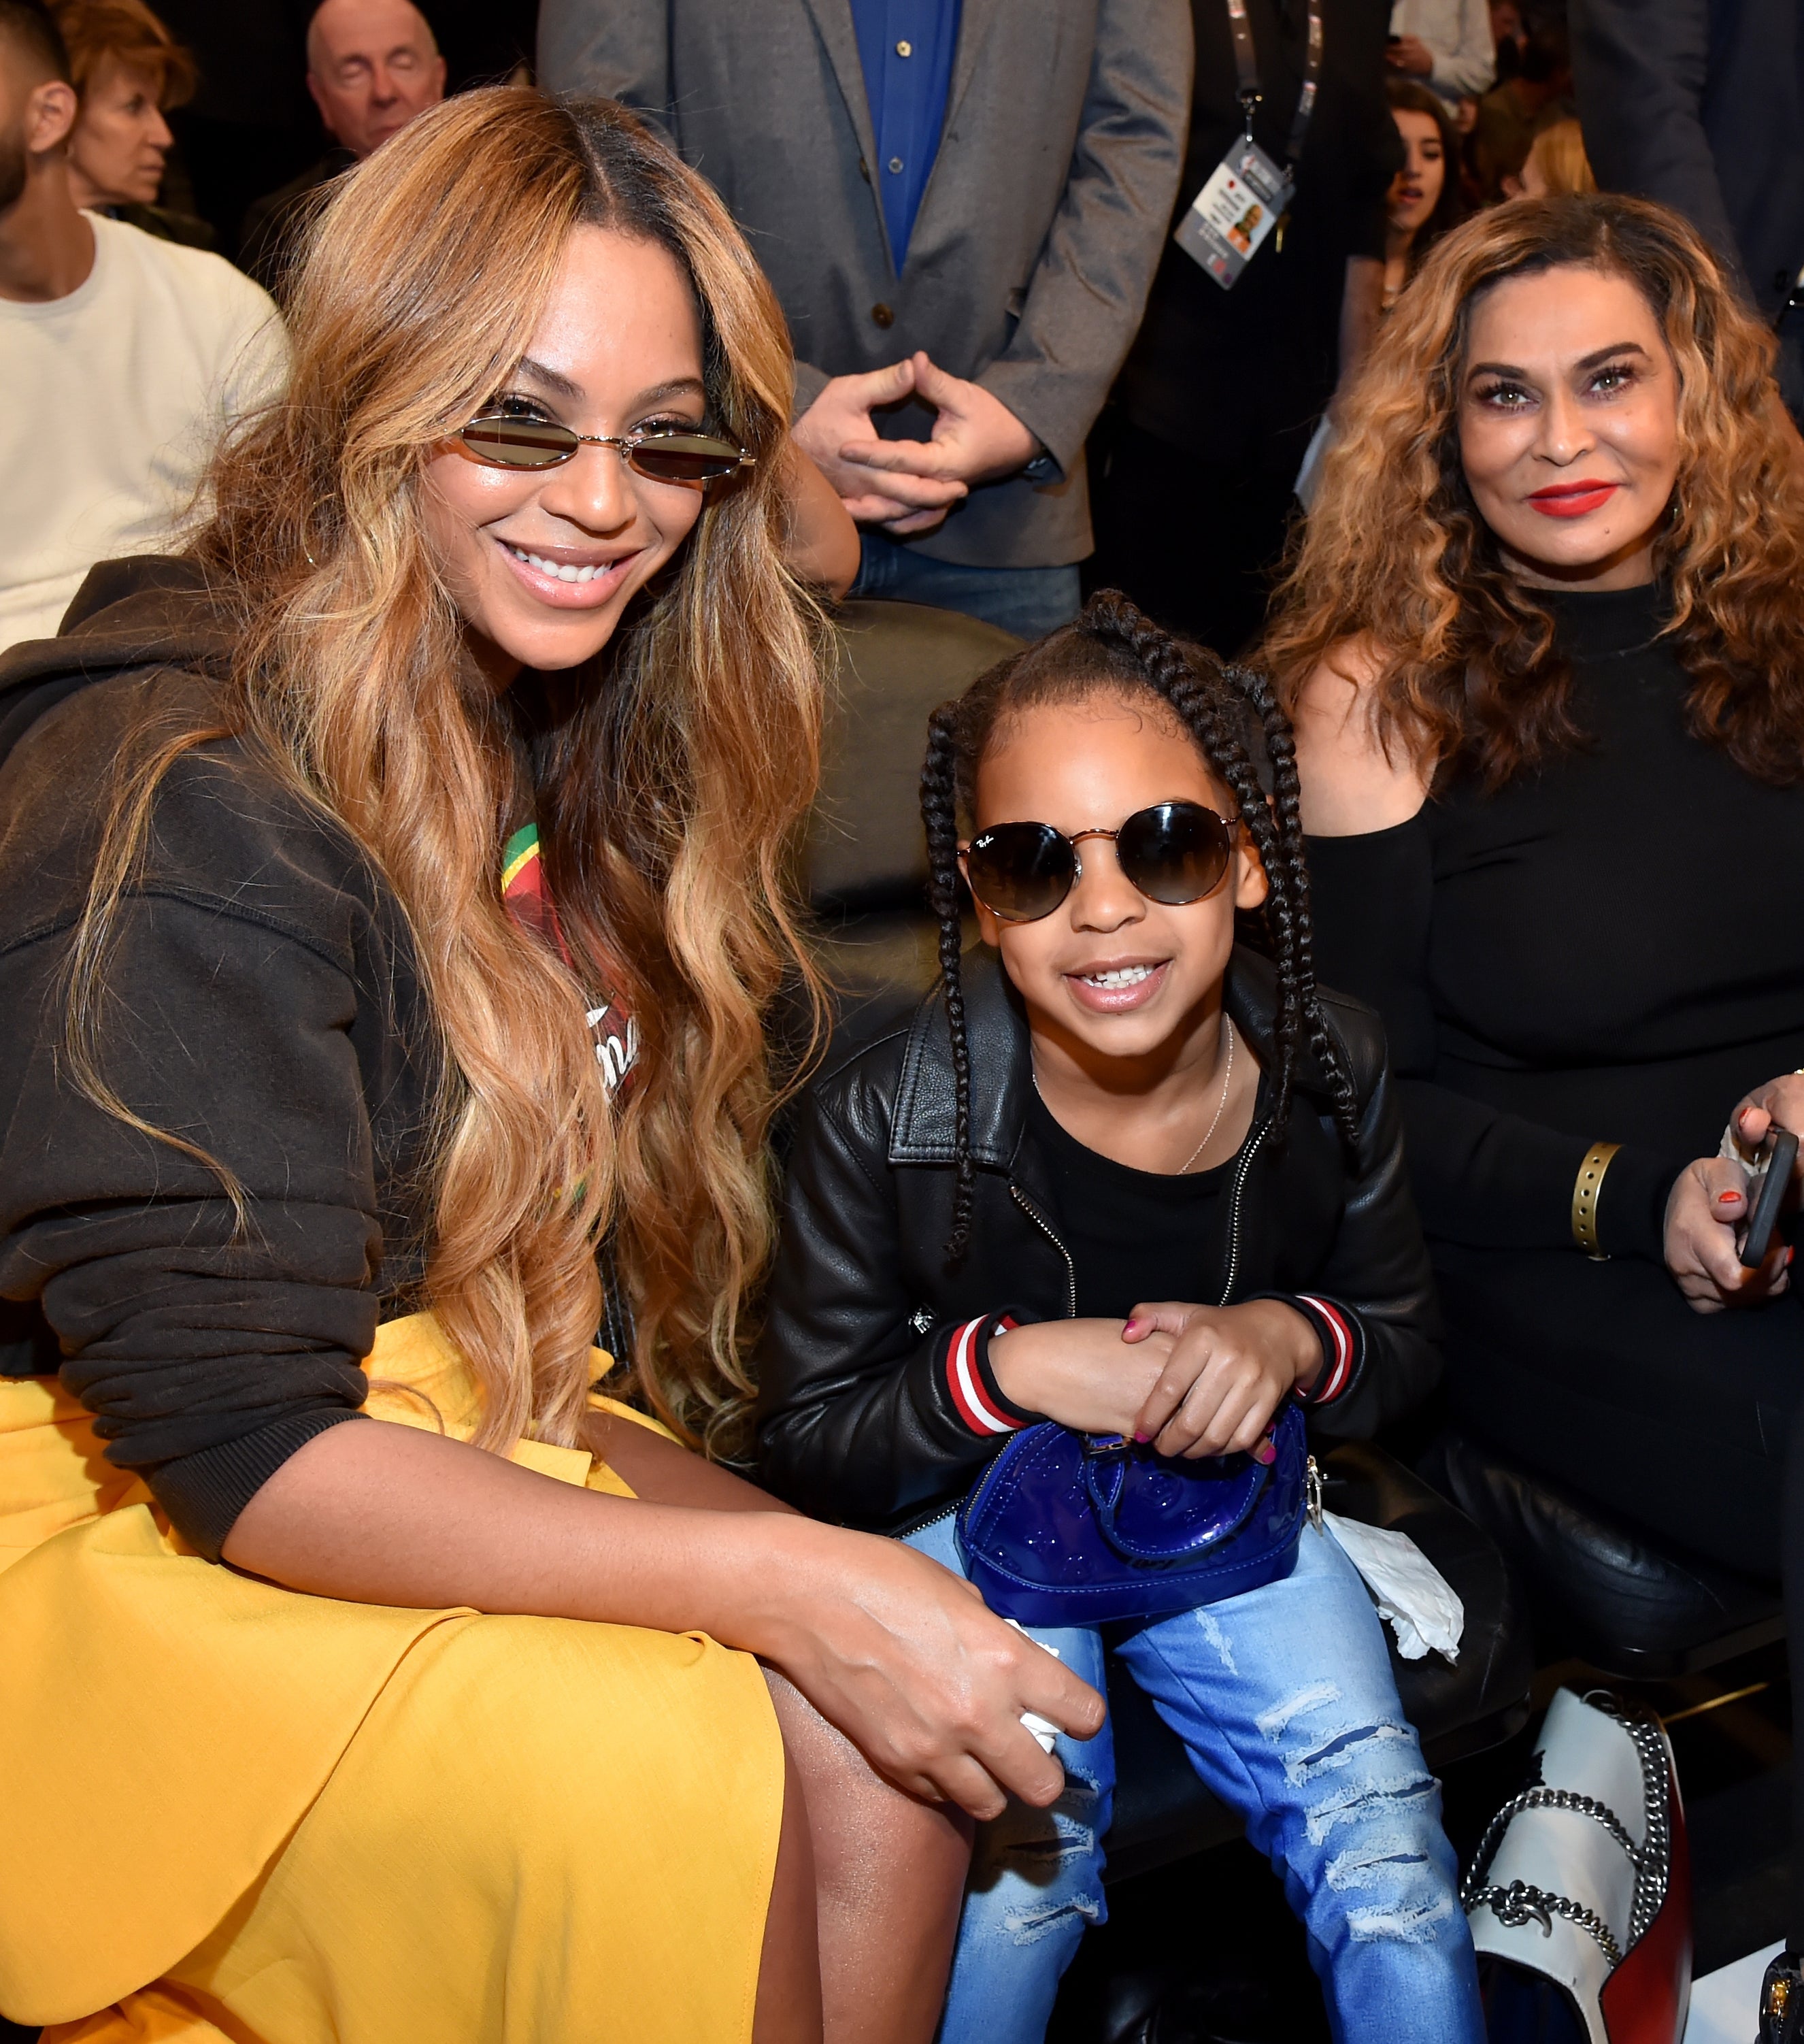 Beyoncé, Blue Ivy, and Tina sitting together